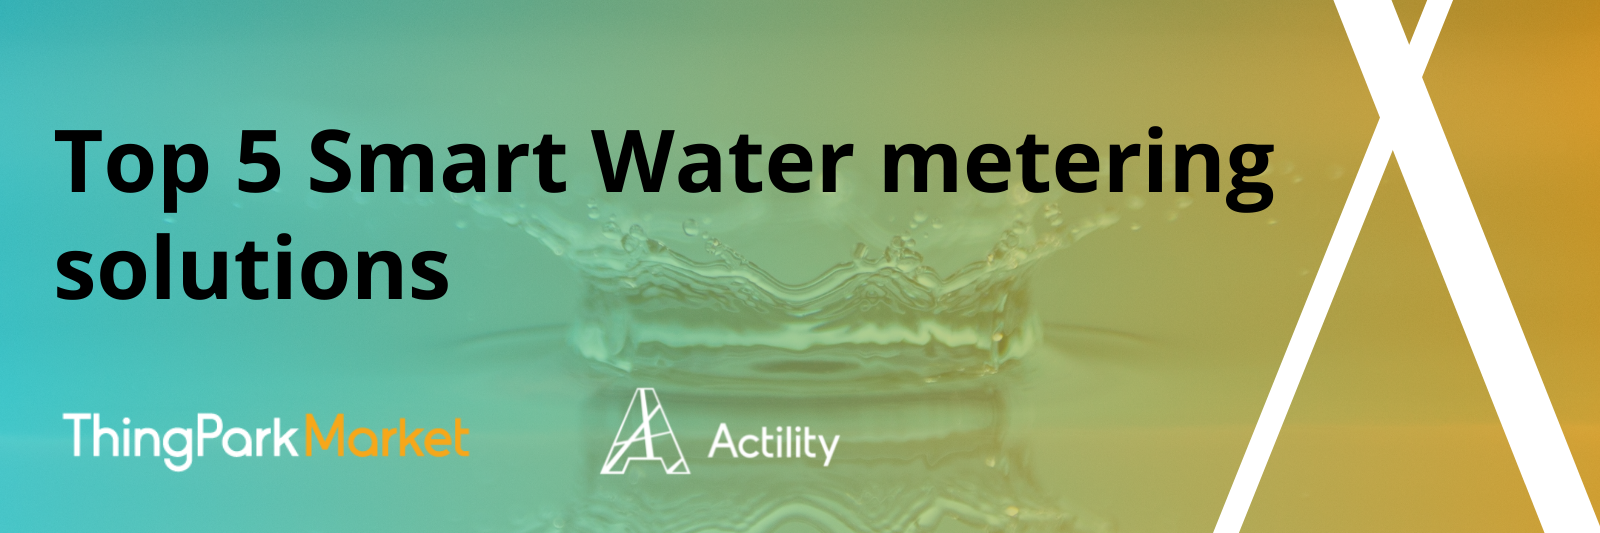 Top 5 Smart Water Metering Solutions 